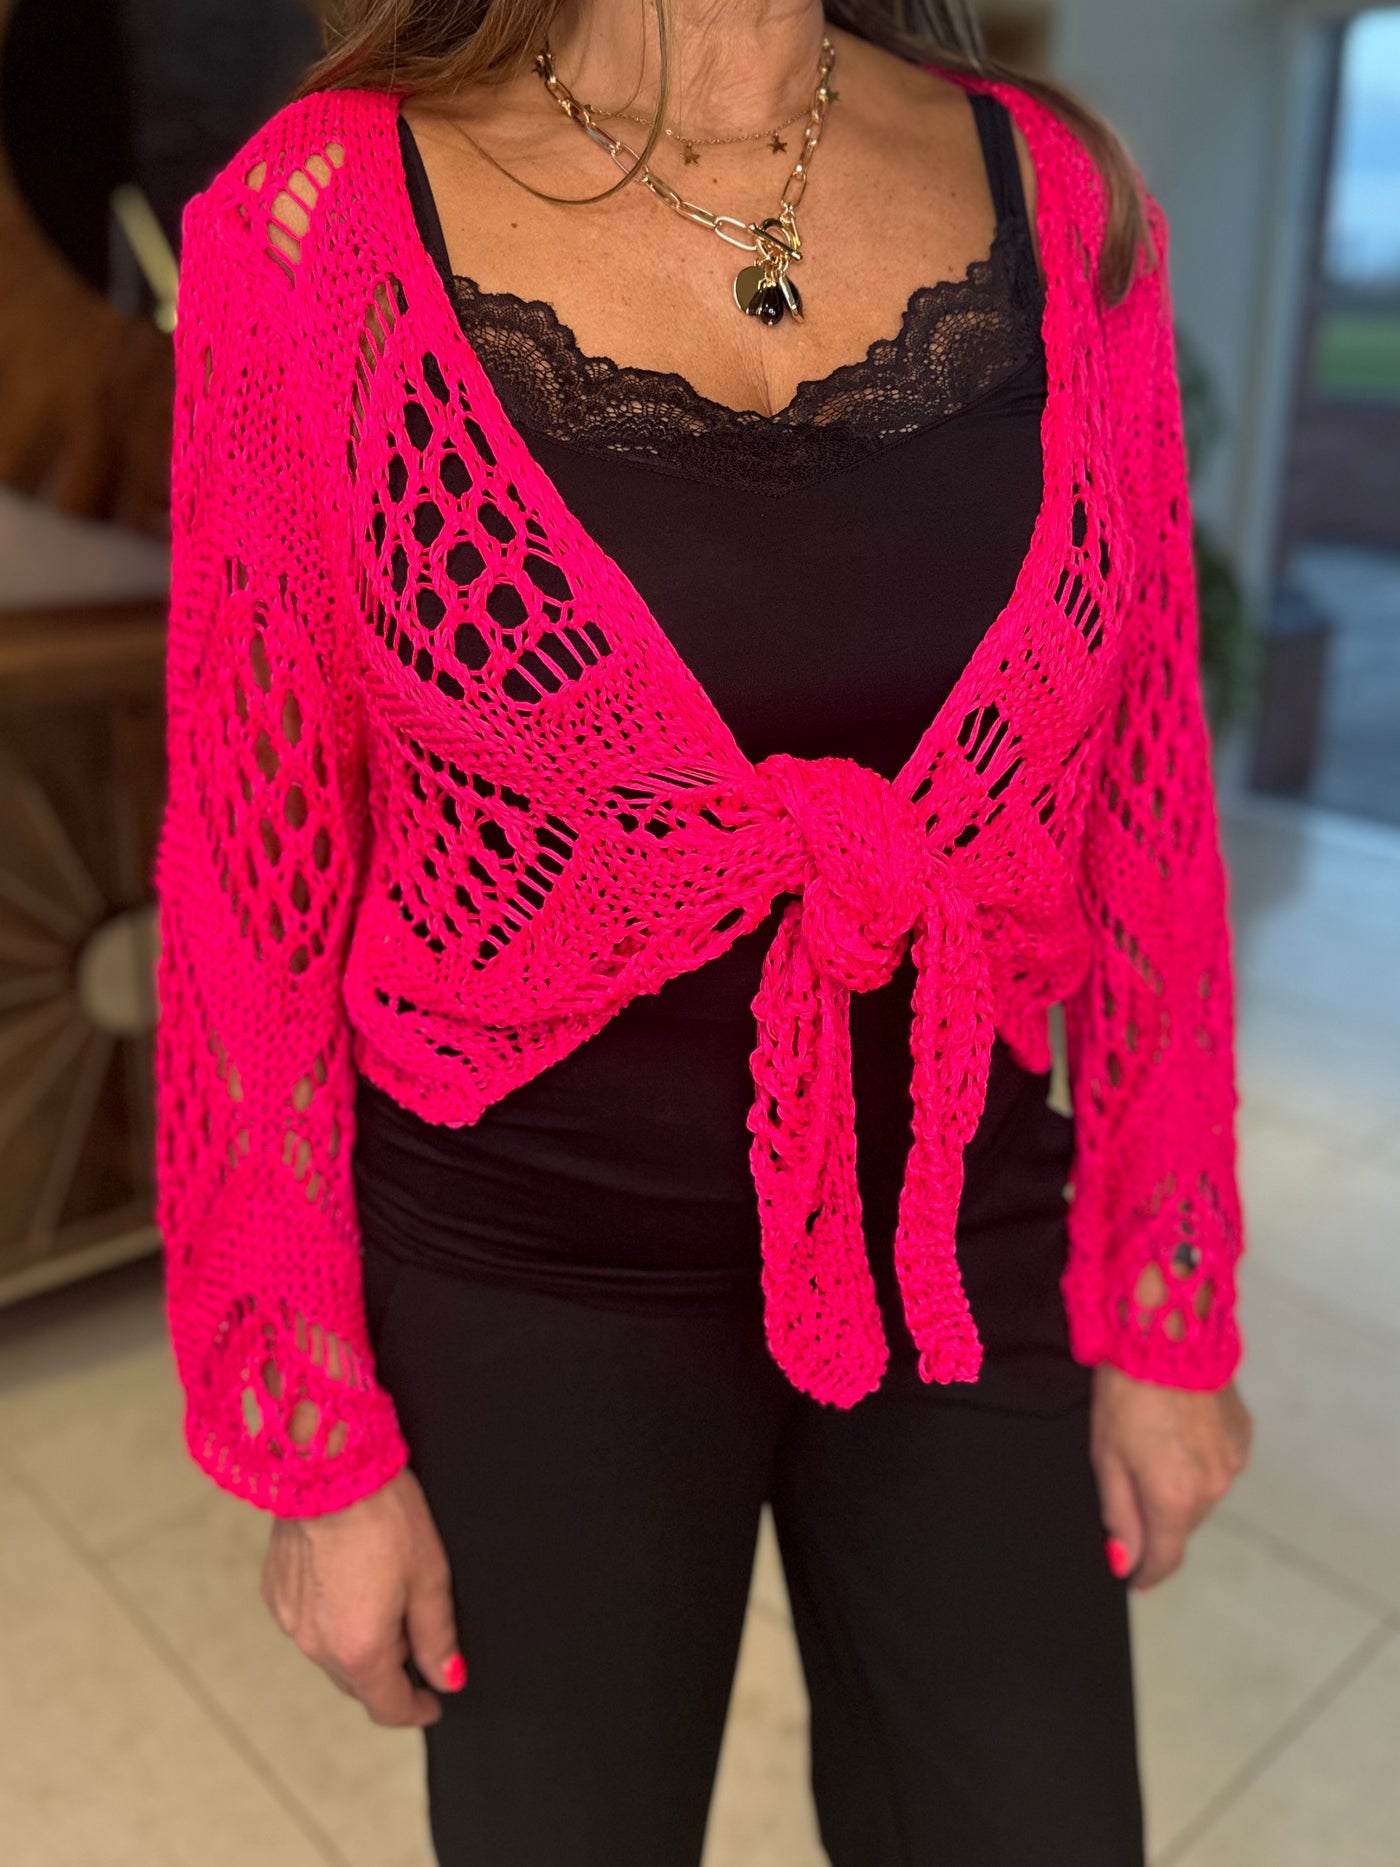 Hot Pink Crochet Tie Shrug